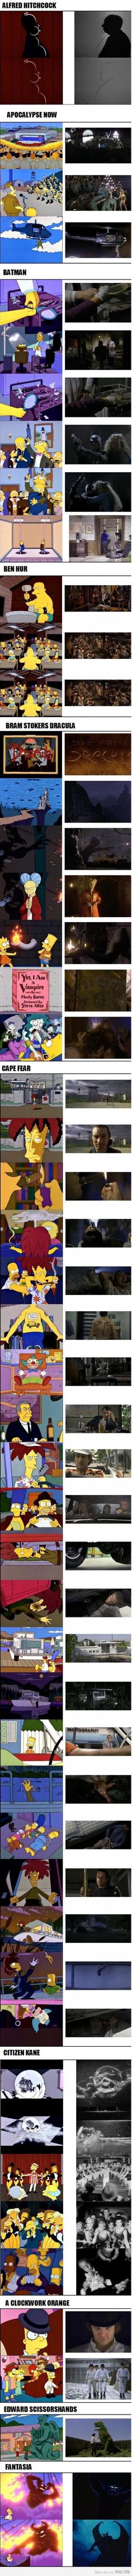 Veja (quase) todas as referências cinematográficas dos 27 anos dos Simpsons